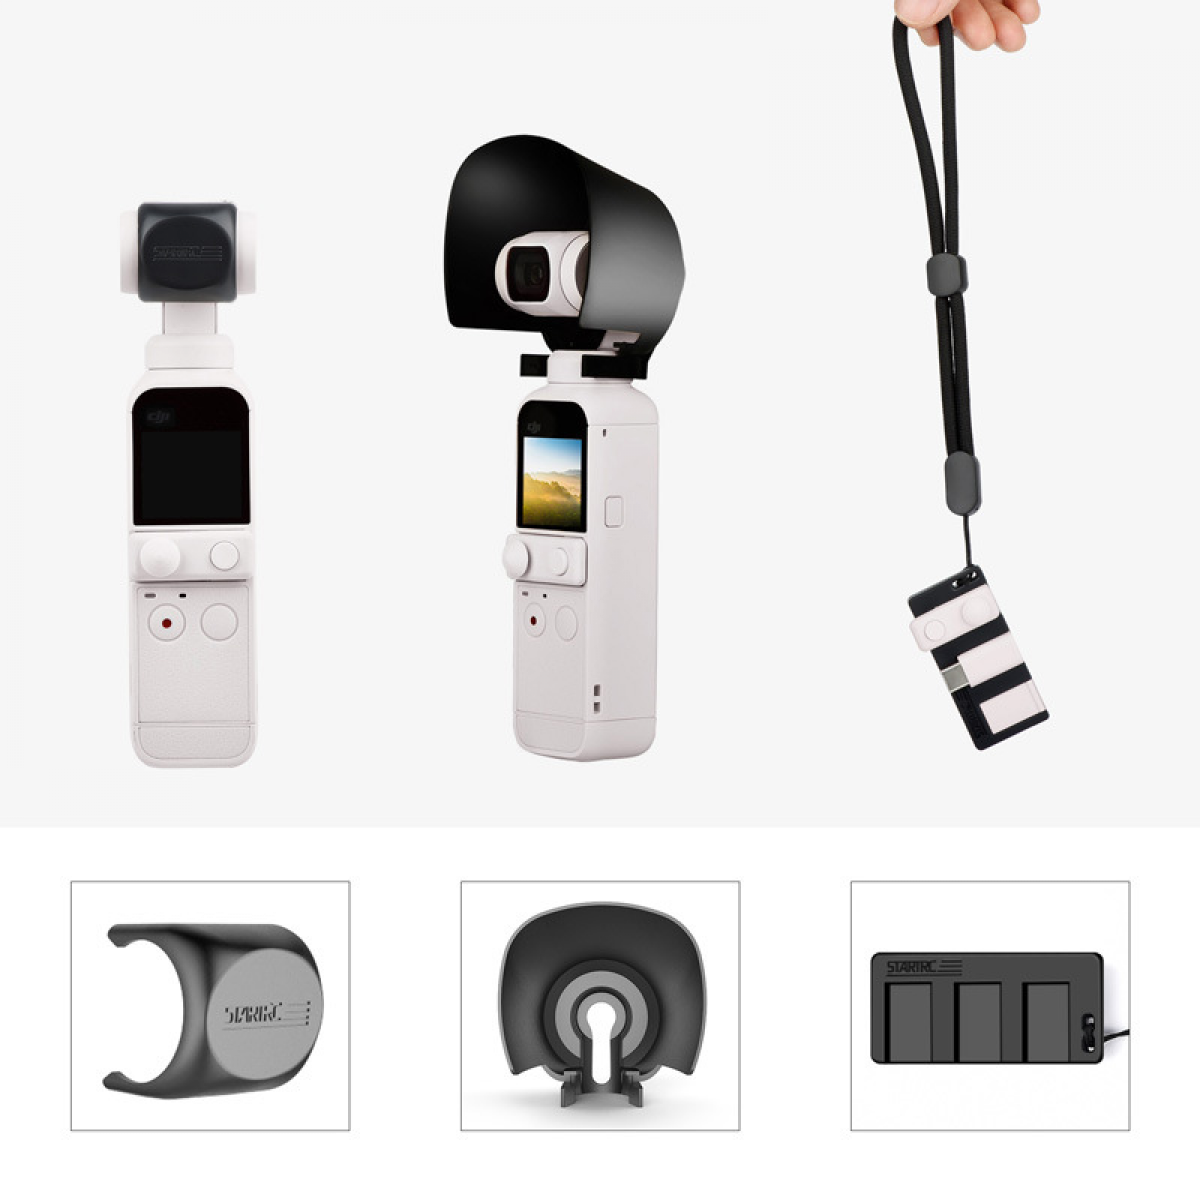 INF Gegenlichtblende Objektivdeckel-Adapterhalter für Zubehör, DJI Kamera Pocket 2 OSMO Schwarz